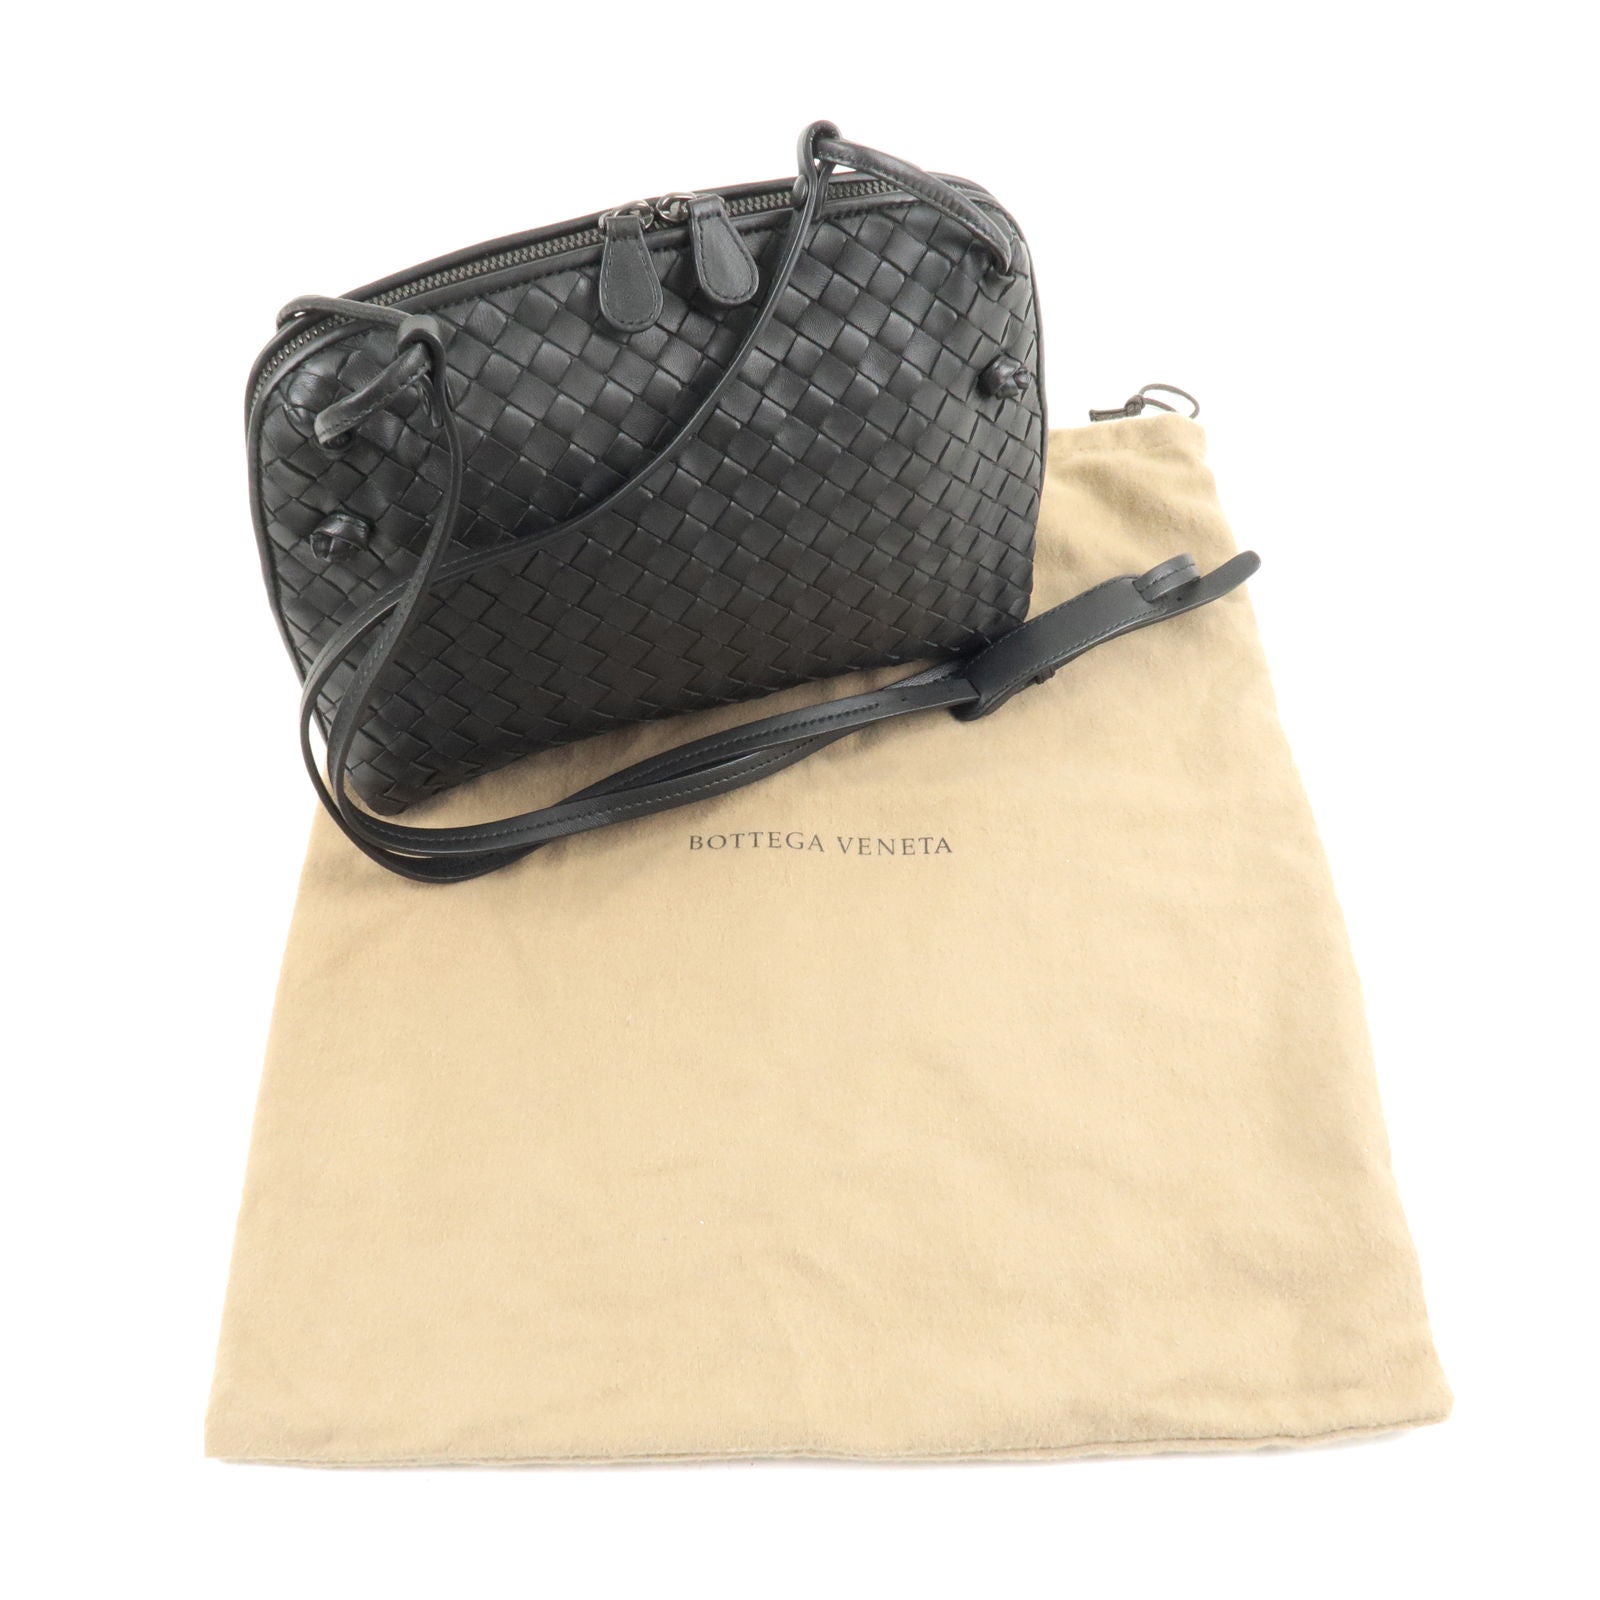 Bottega Veneta, Bags, Bottega Veneta Metallic Leather Nodini Crossbody Bag